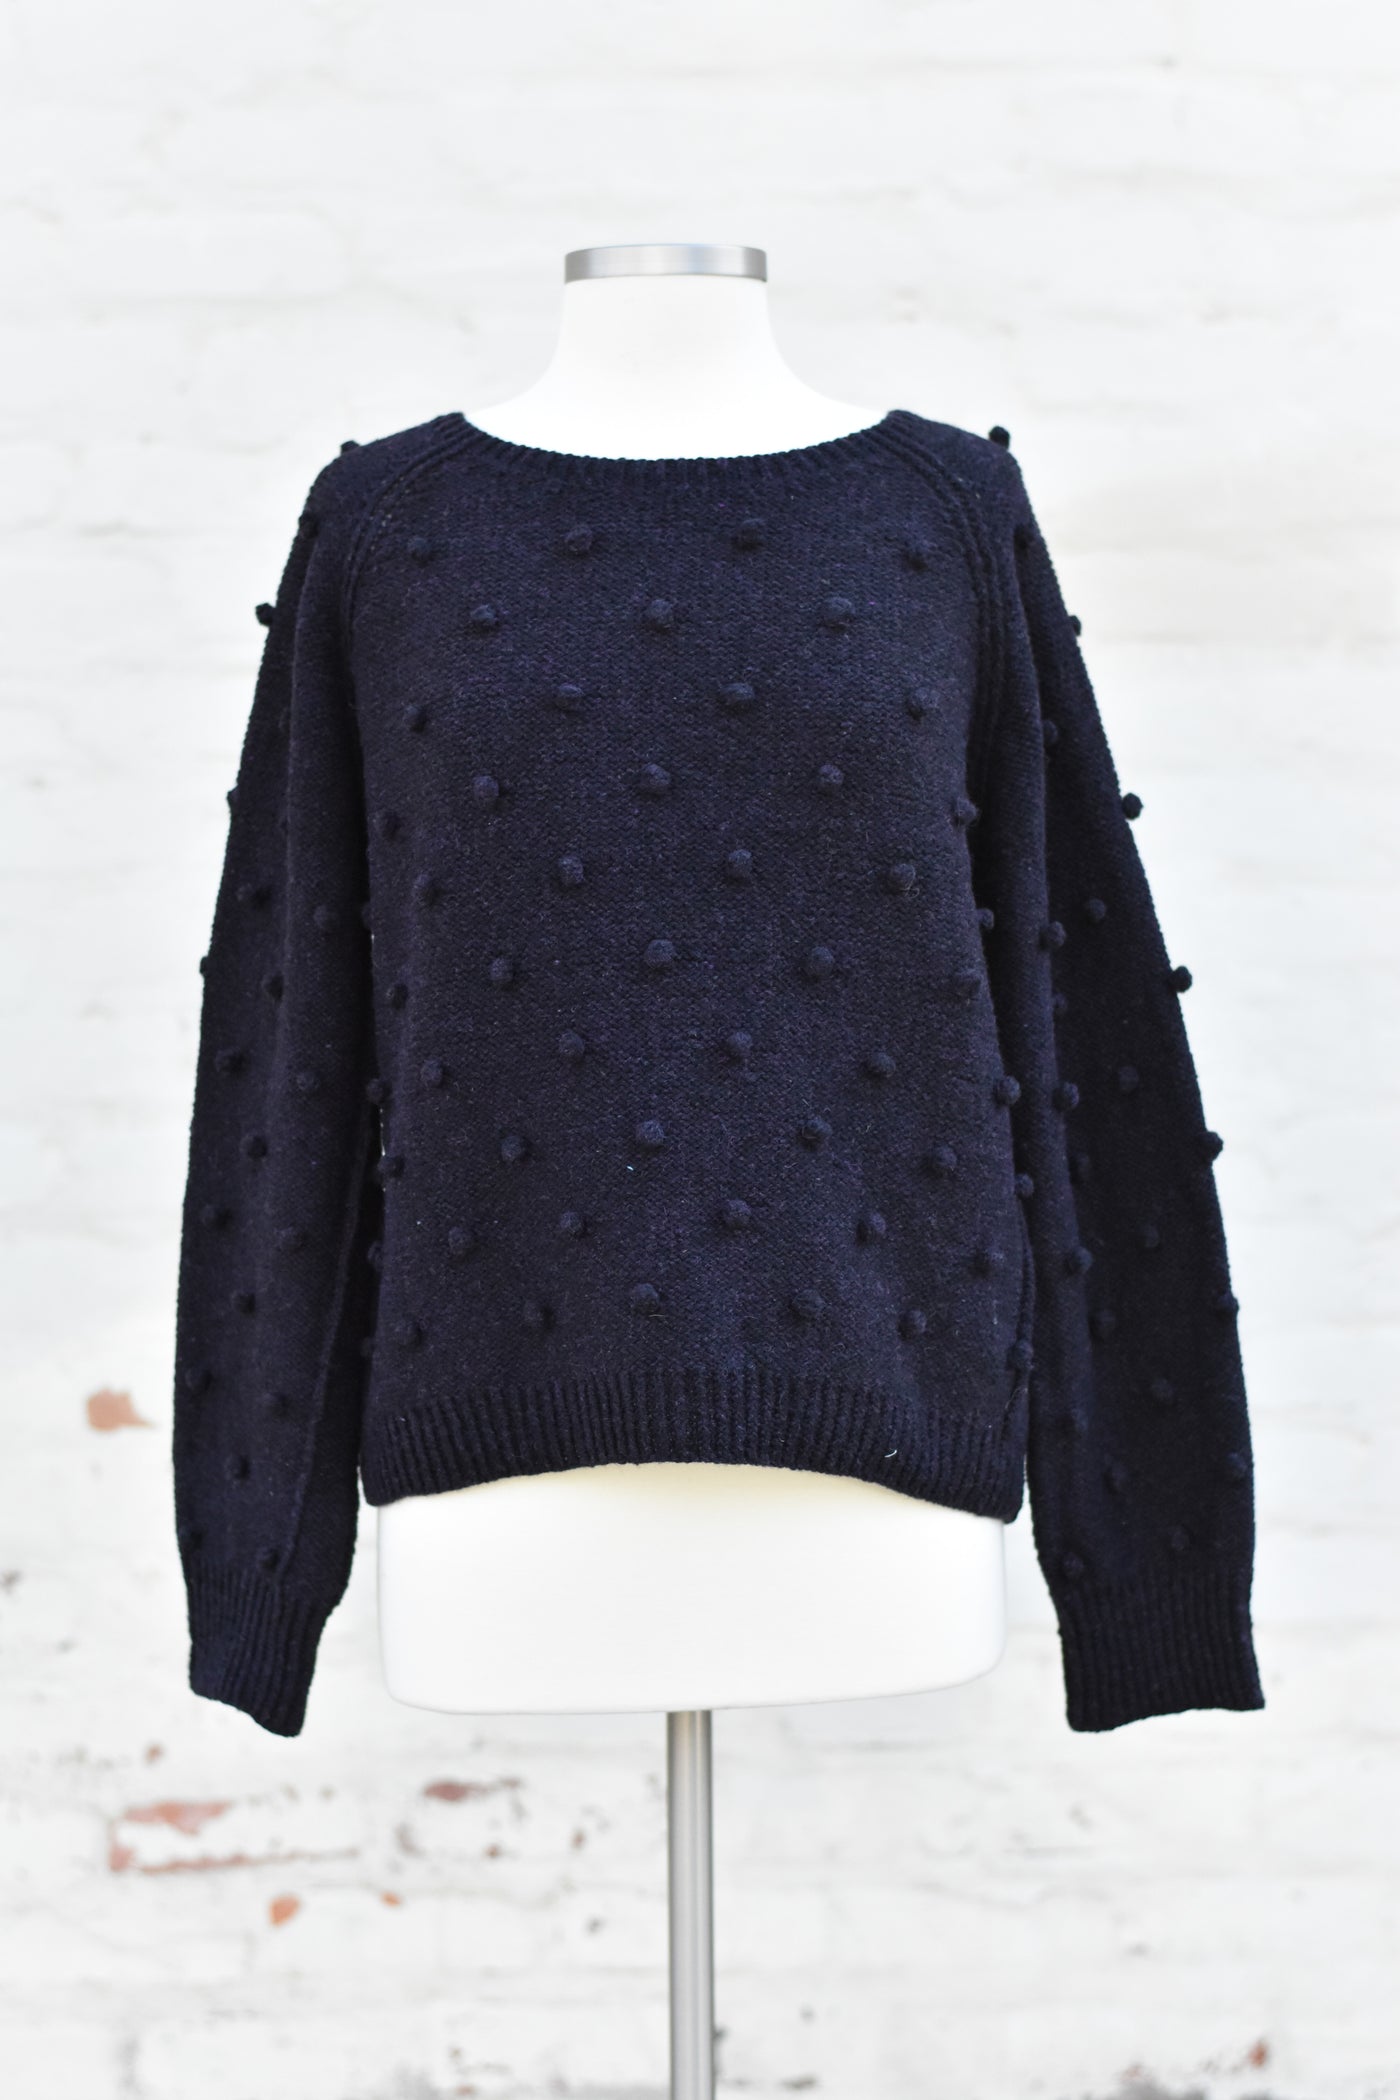 Arbusto Sweater Kit, Harrisville Nightshades